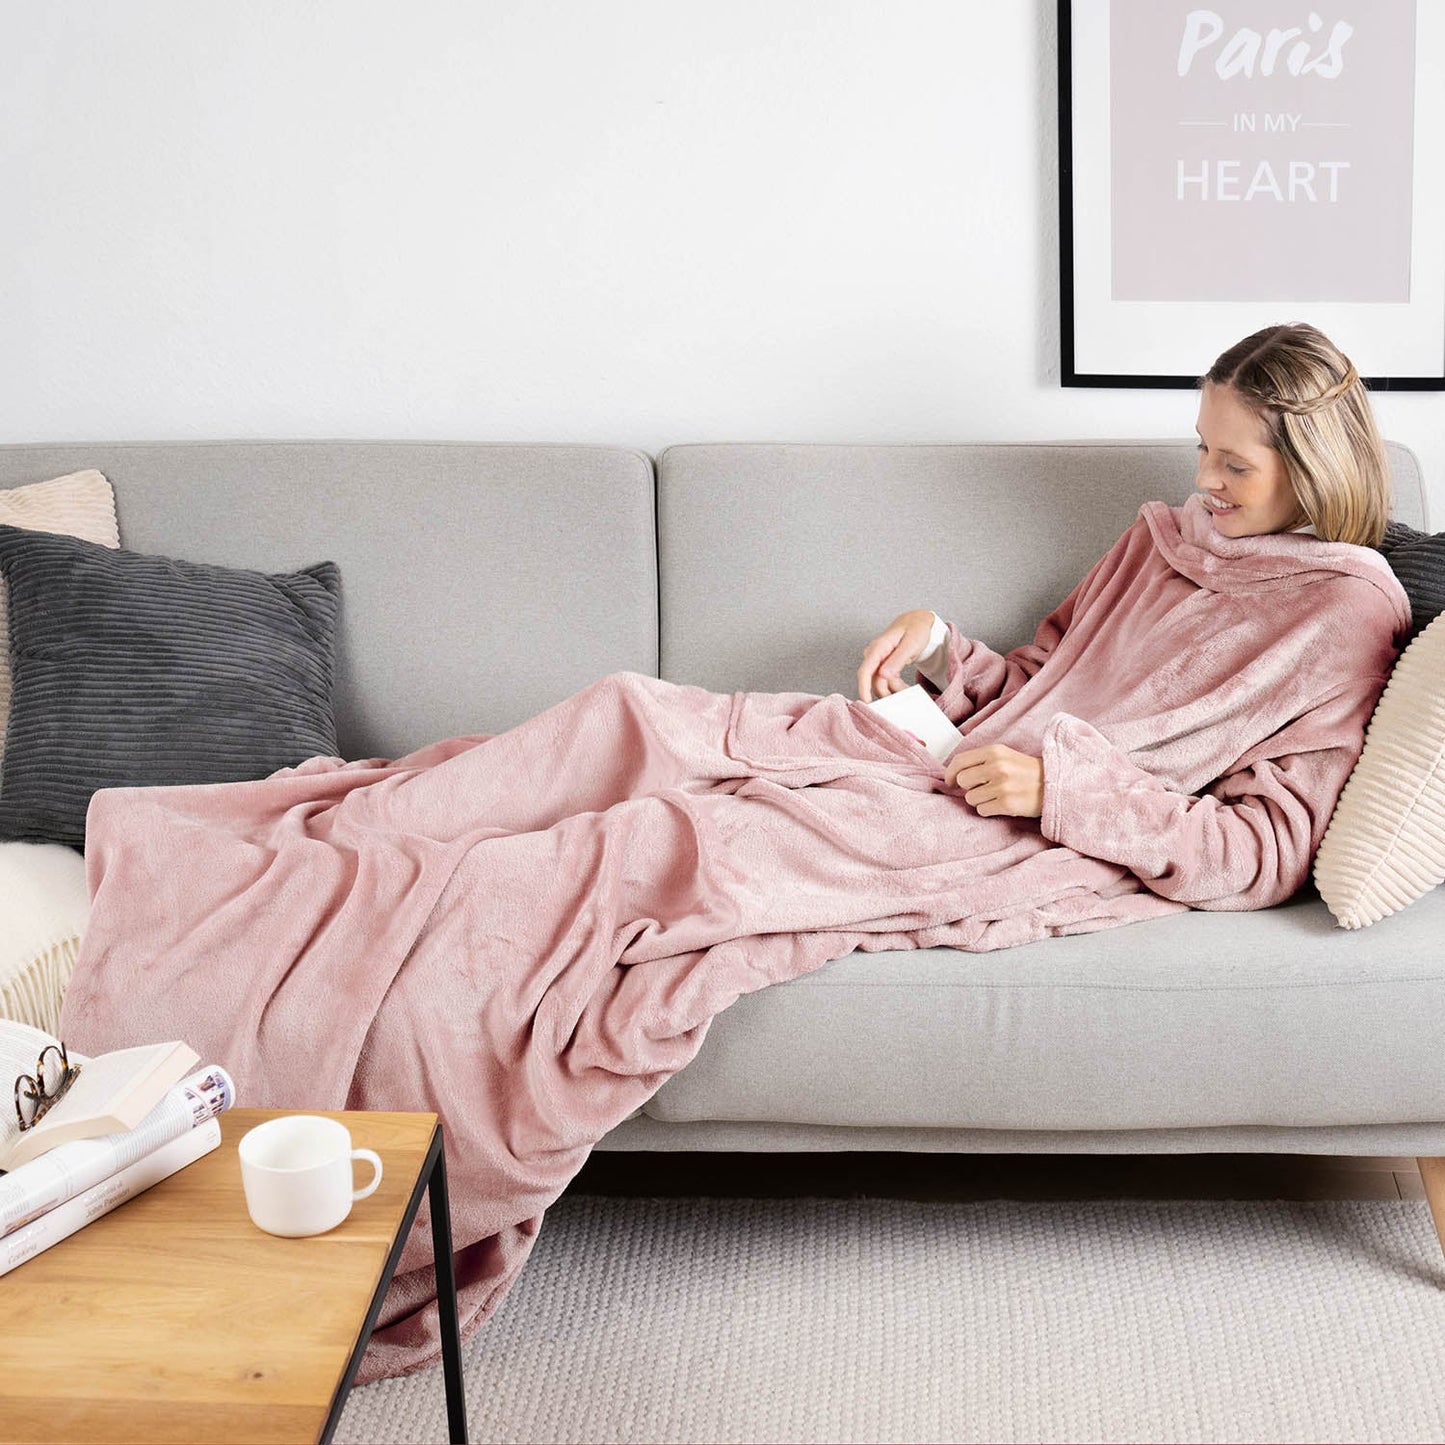 Frau liegt auf einem grauen Sofa eingehüllt in ein rosa flauschiges Kleidungsstück und liest ein Buch mit einer Tasse auf einem Holztisch daneben.